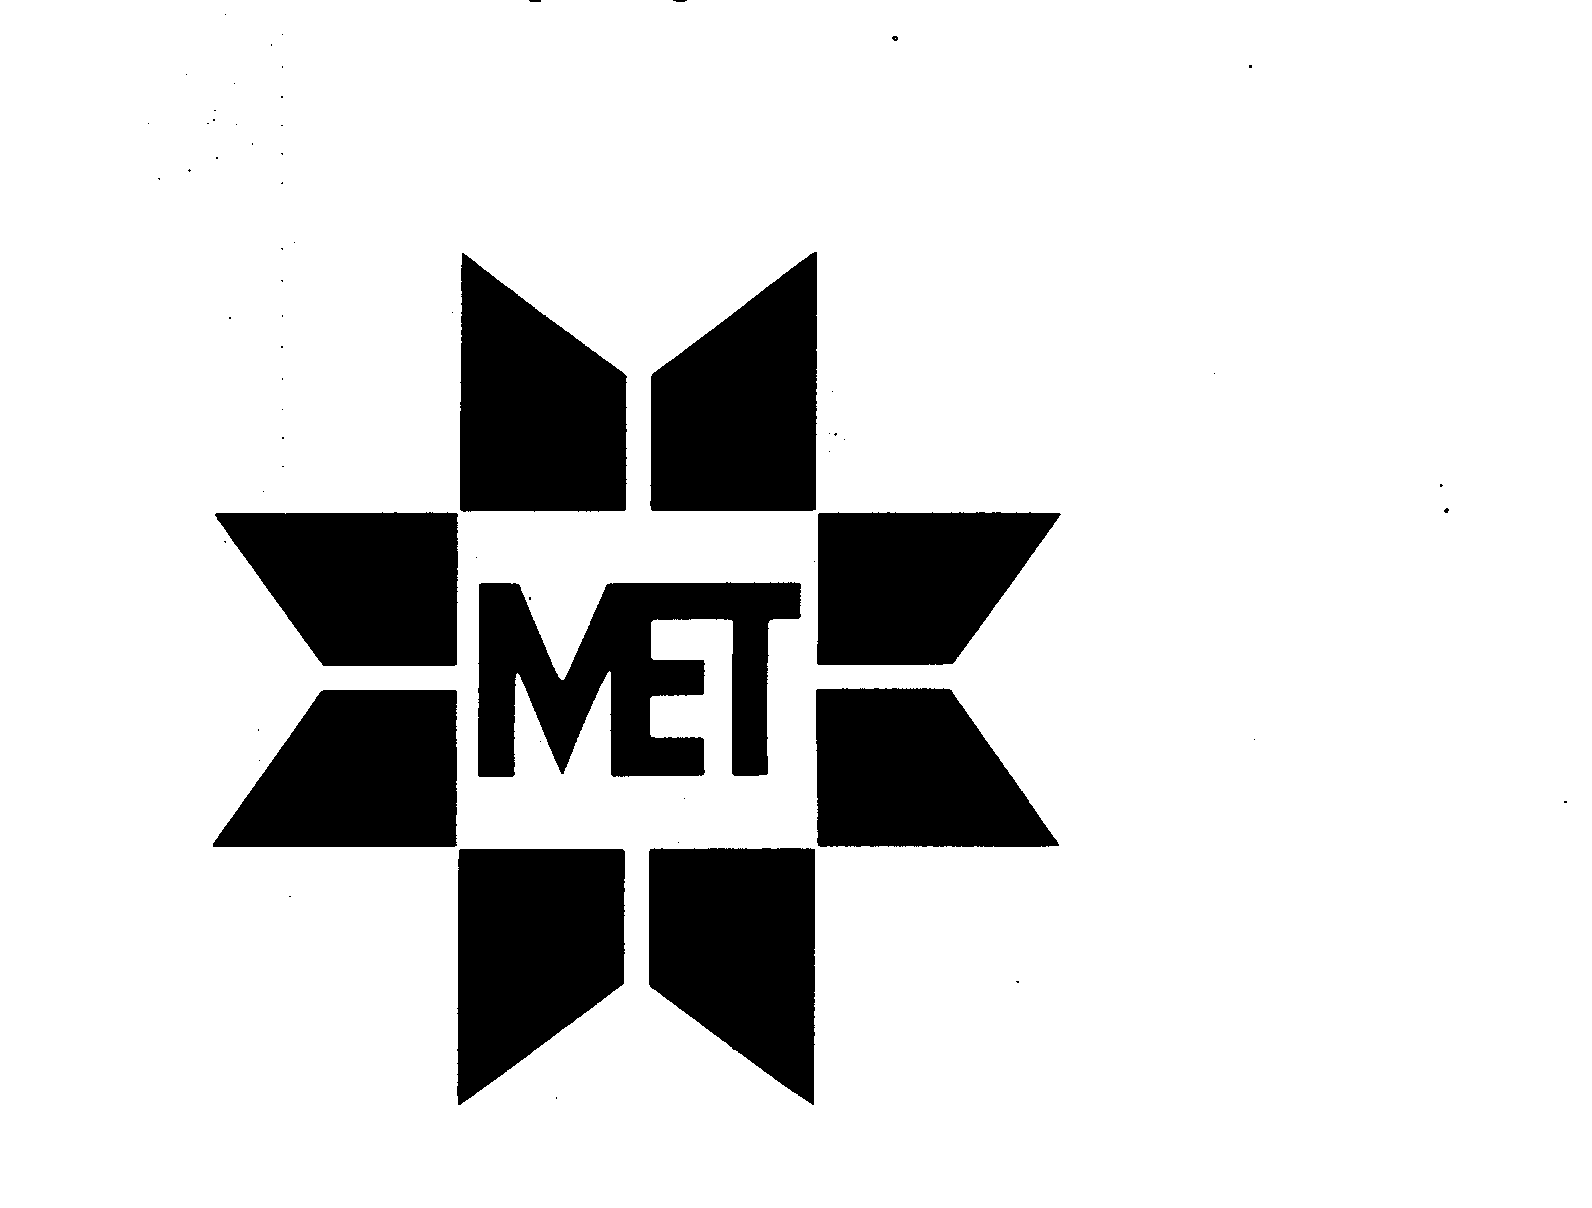 Trademark Logo MET